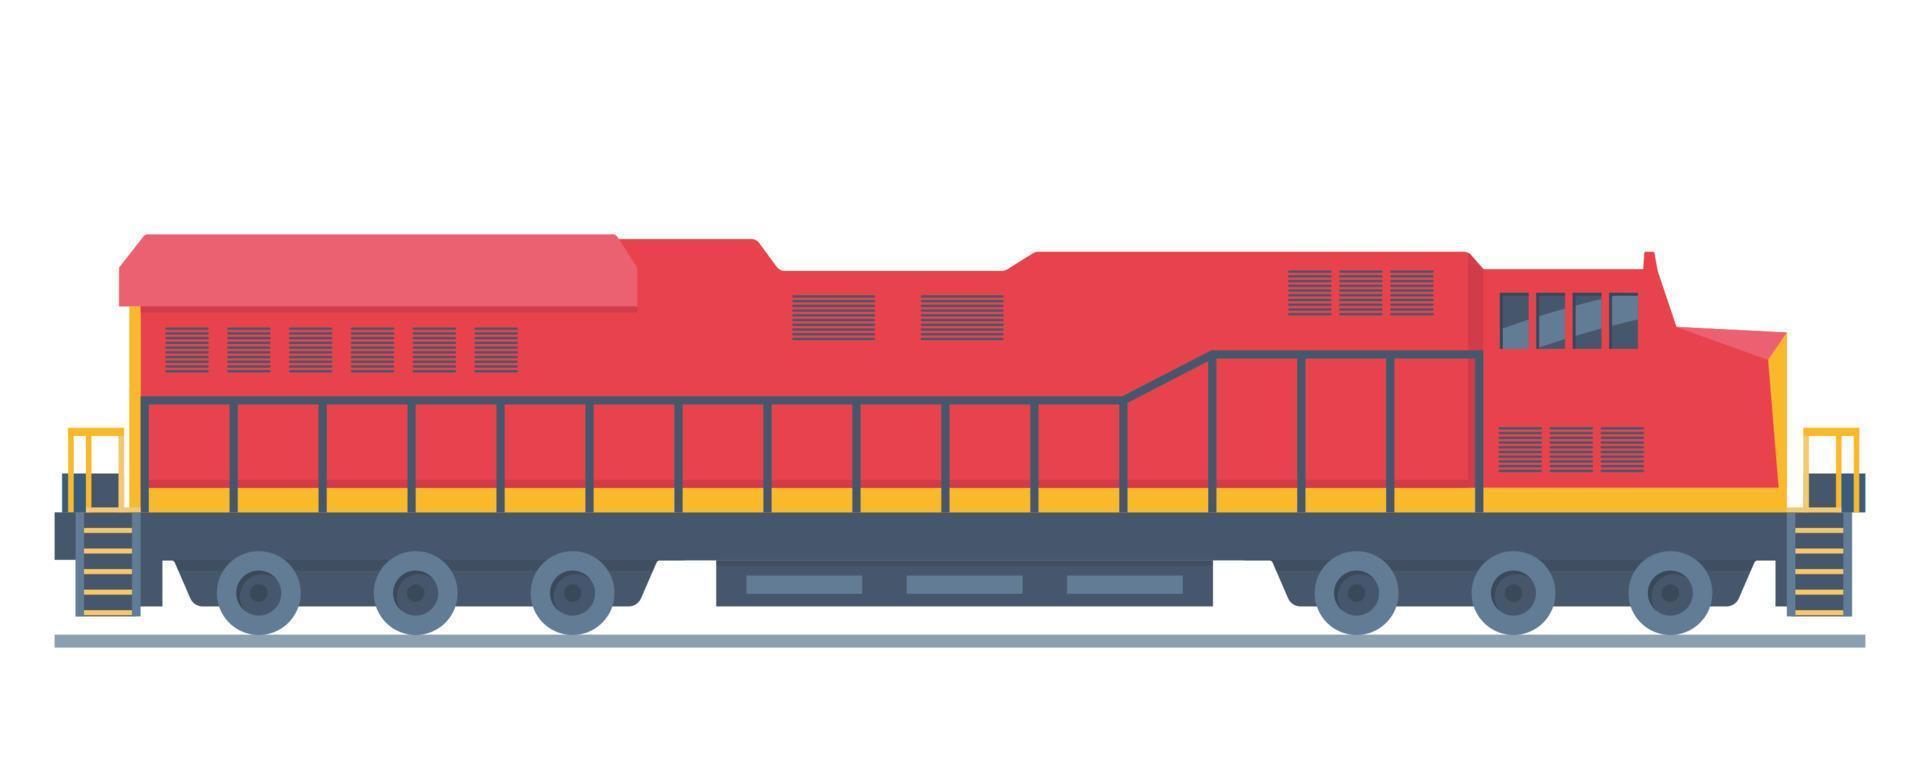 locomotief, spoorweg voertuig voor trekken treinen. spoorweg motor, energie, beweging of macht naar produceren, voortvarend dwingen en beweging. vector vlak illustratie.